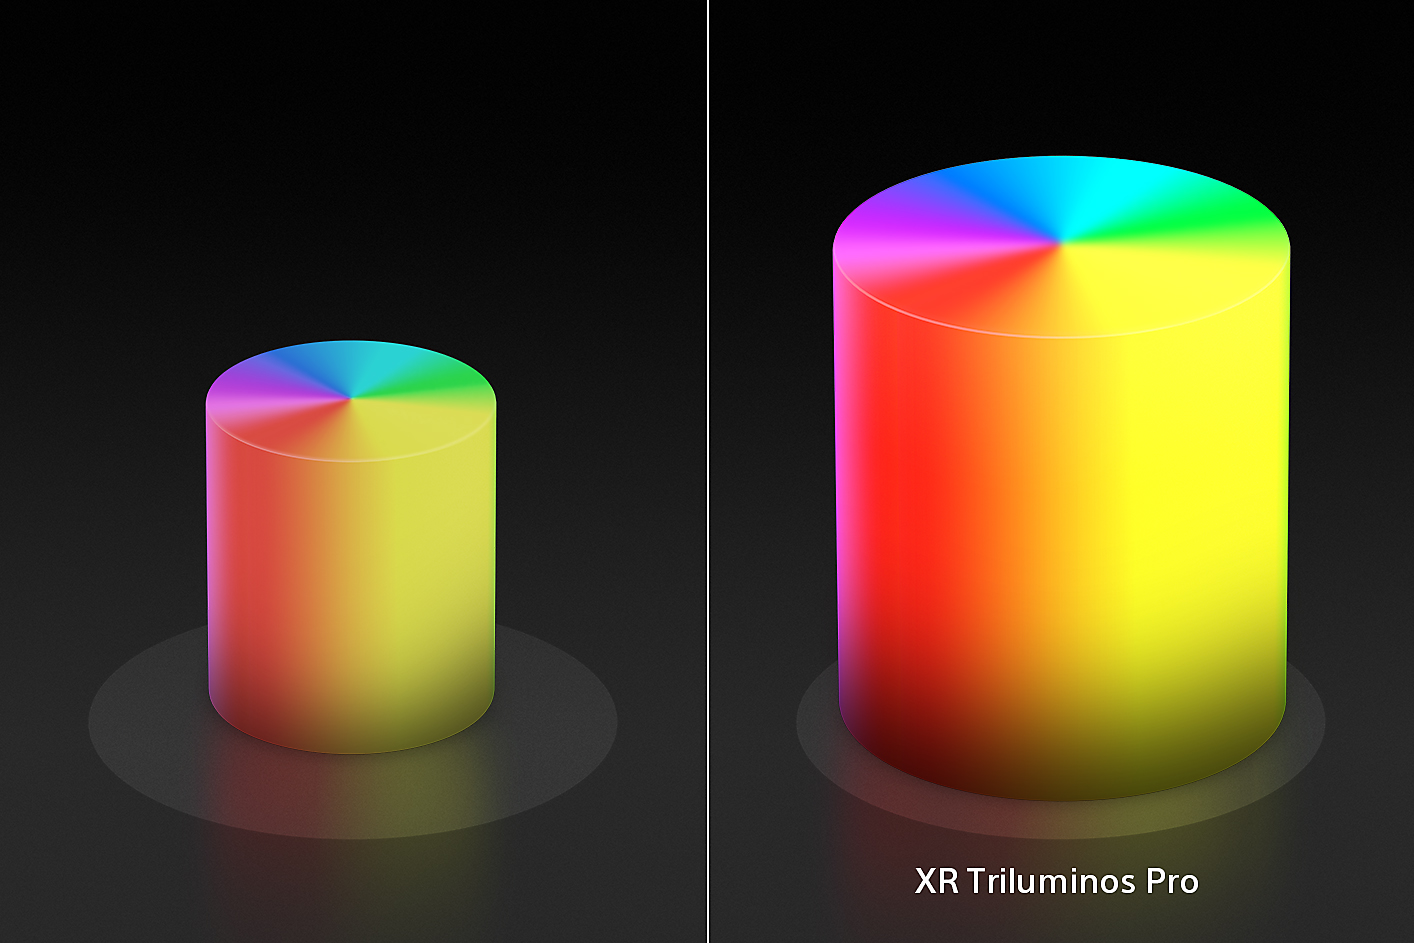 Delt skjermbilde som viser to lysformede fargekjegler, en mindre til venstre og en større til høyre med de forbedrede fargene og teksturene til XR Triluminos Pro